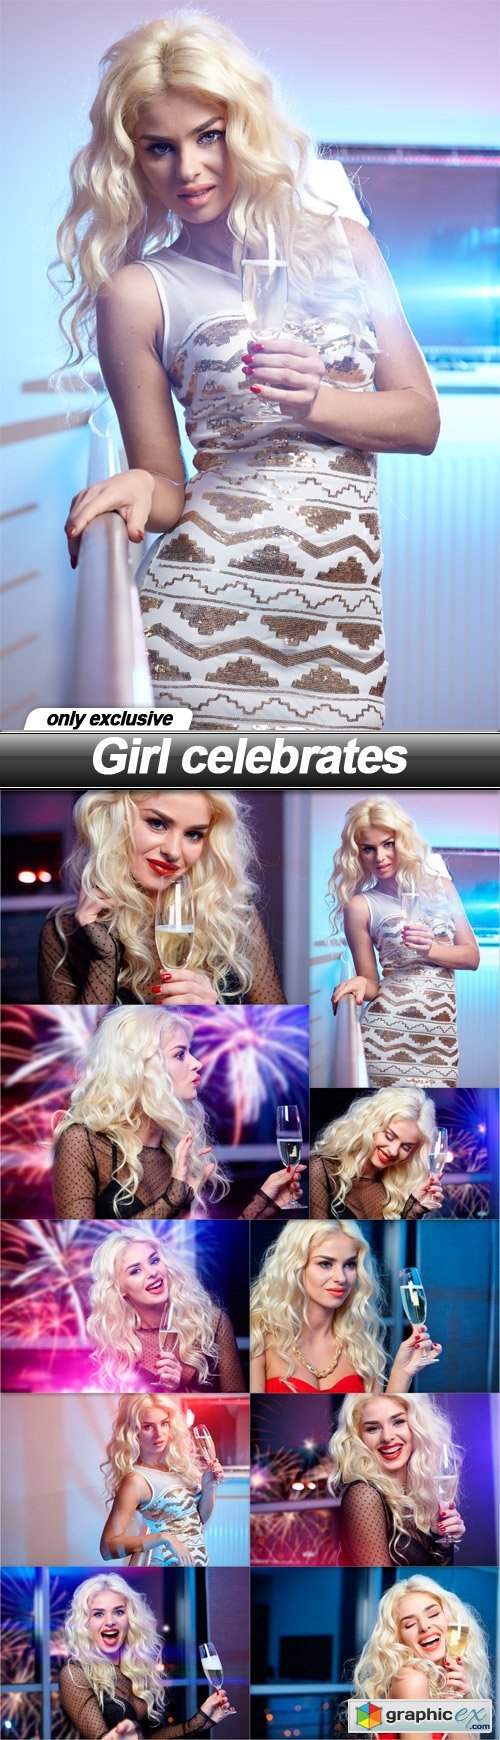 Girl celebrates - 10 UHQ JPEG